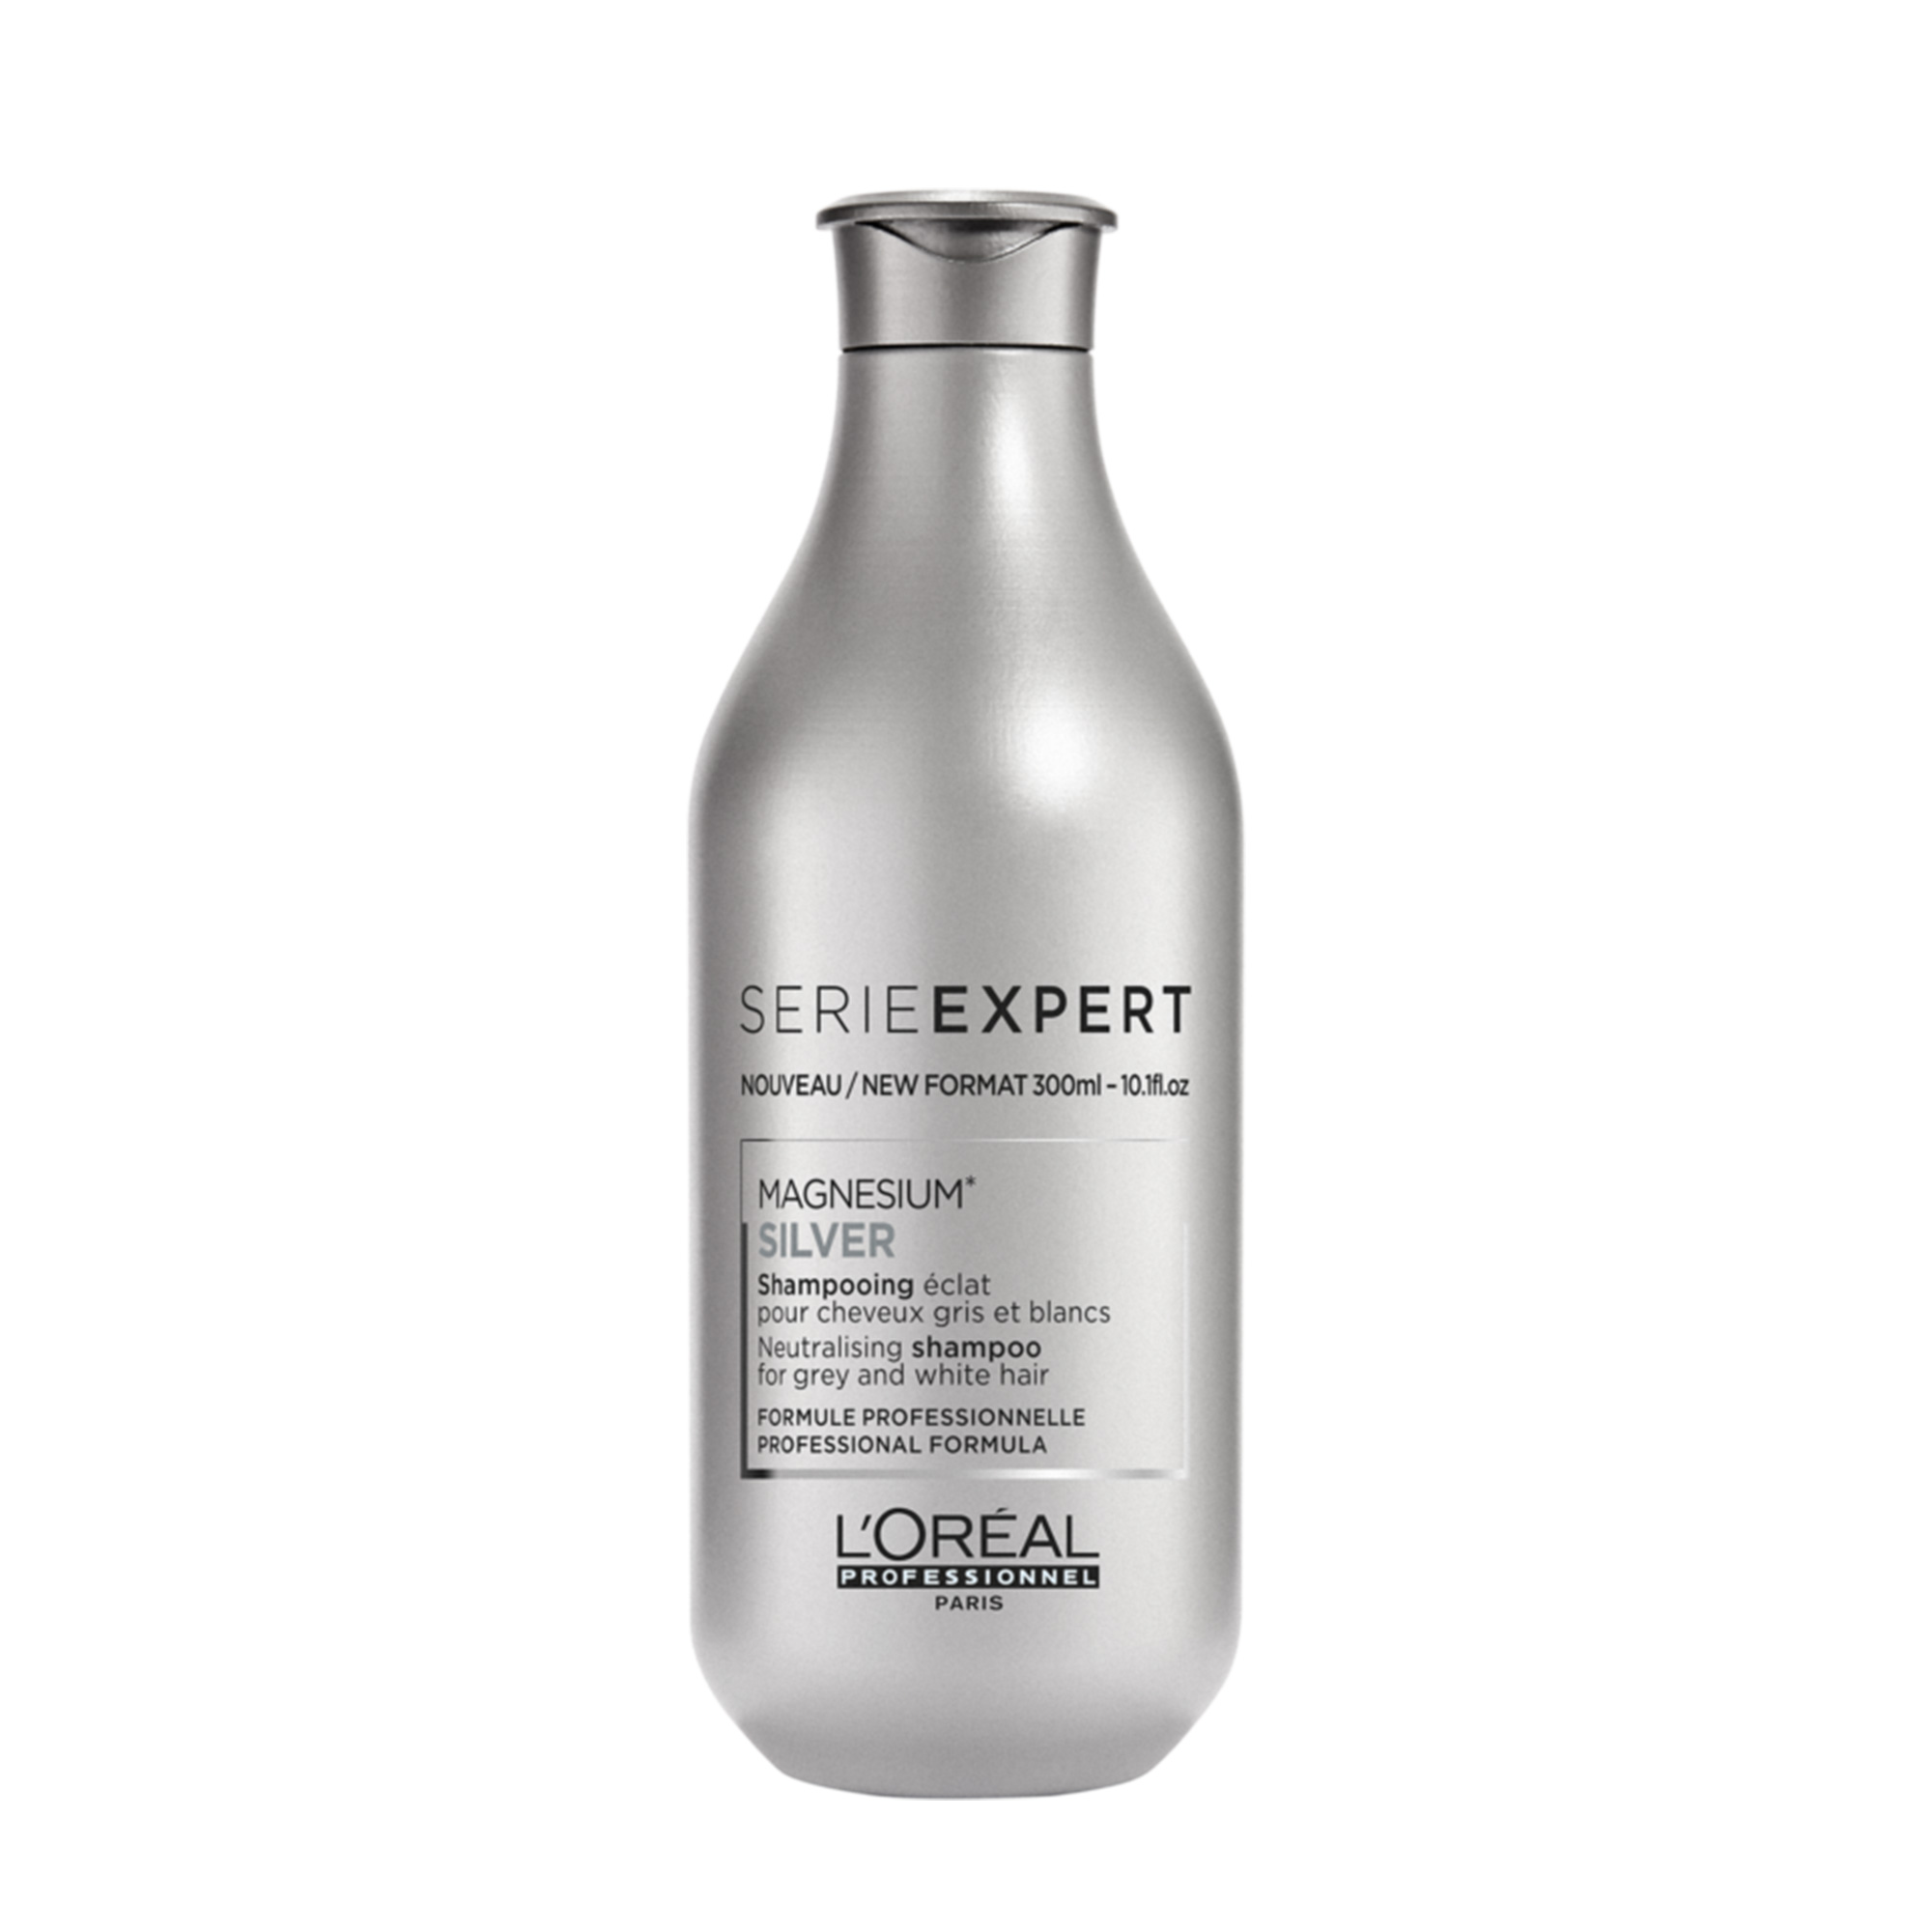 L'Oréal Professionnel LOrealProfessionnel Silver Shampoo, 300